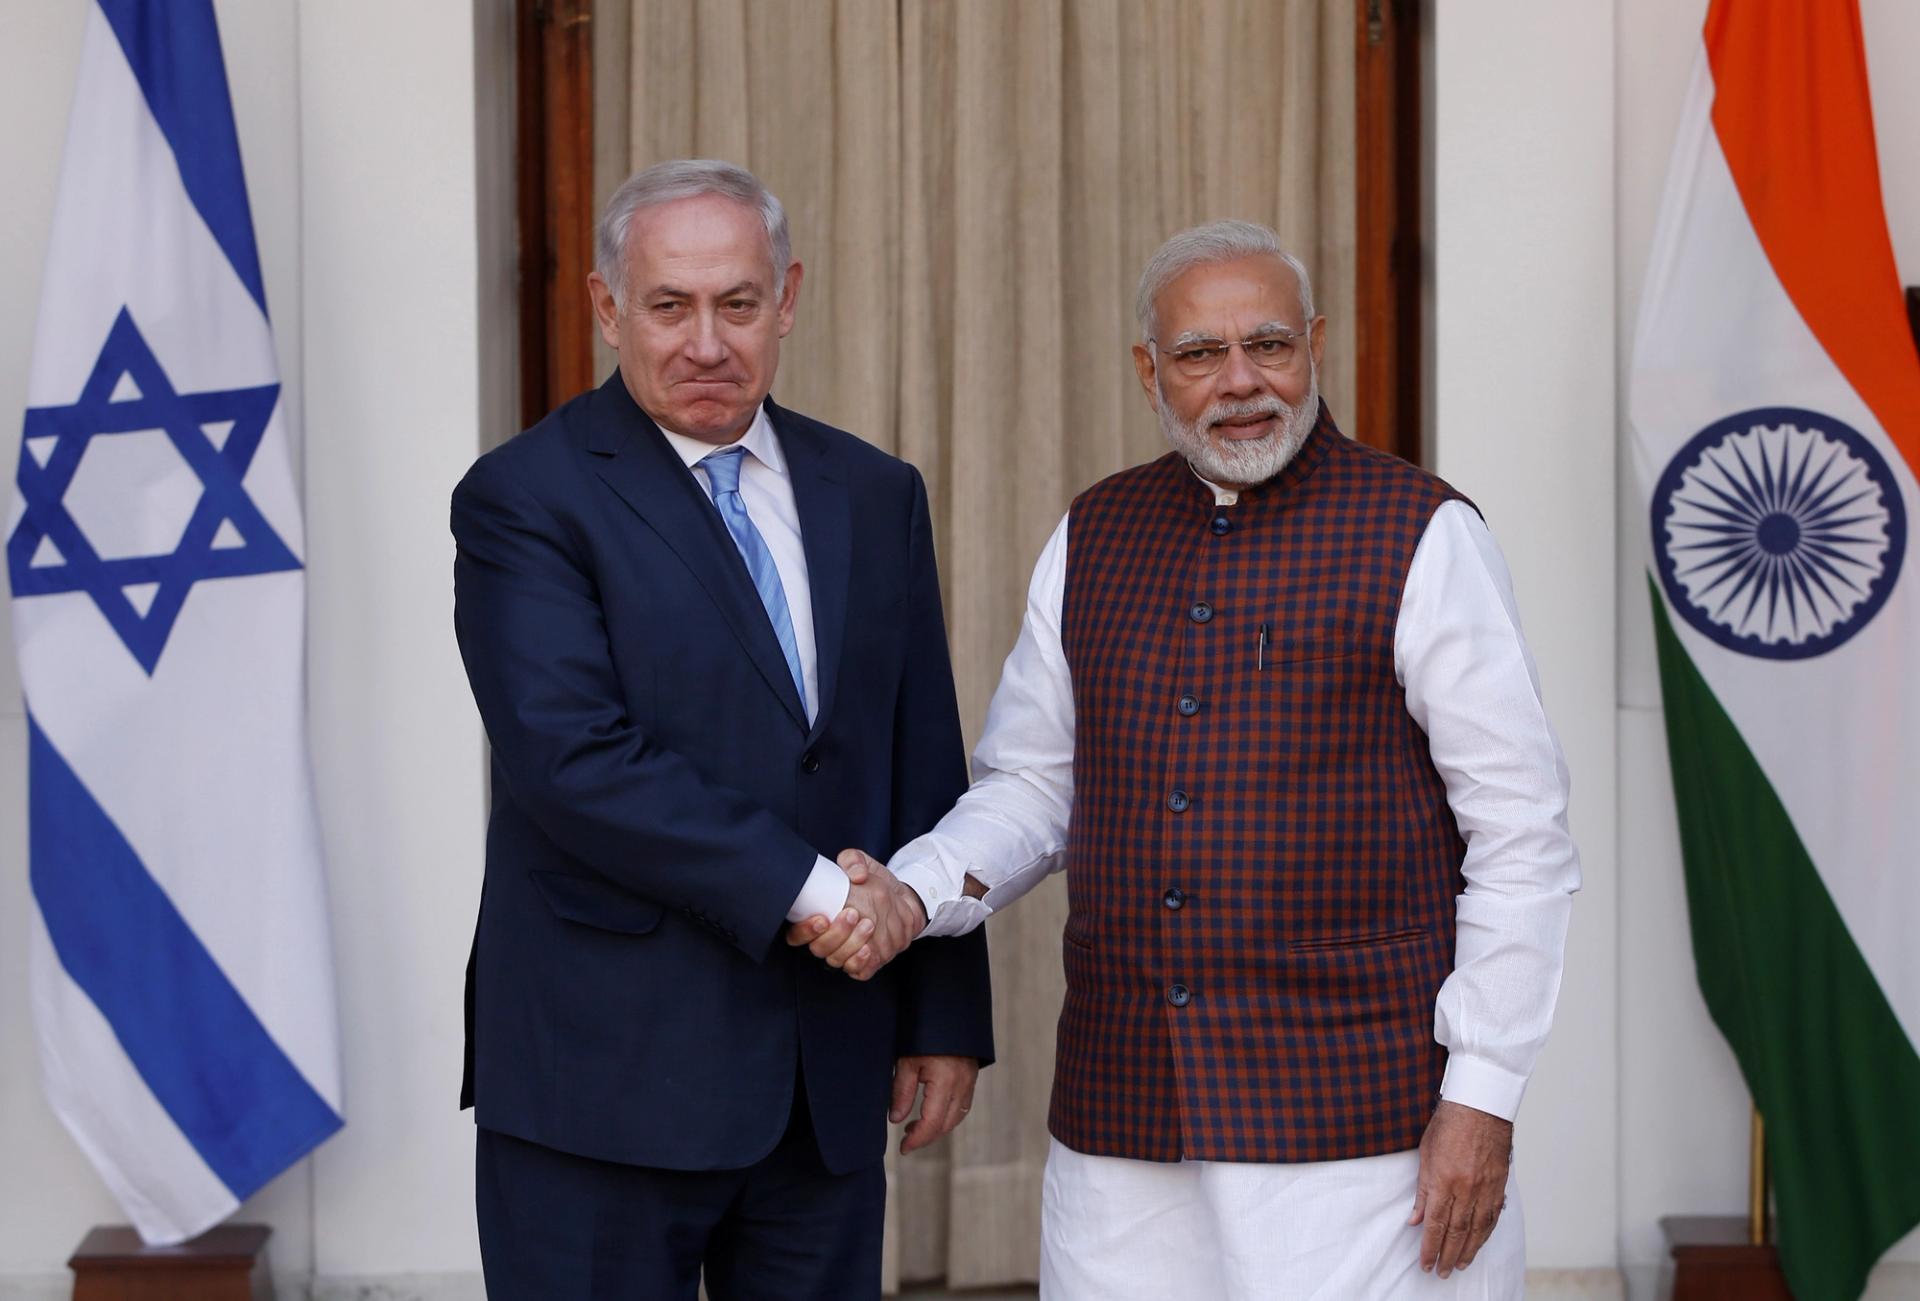 Narendra Modi and Benjamin Netanyahu in 2018